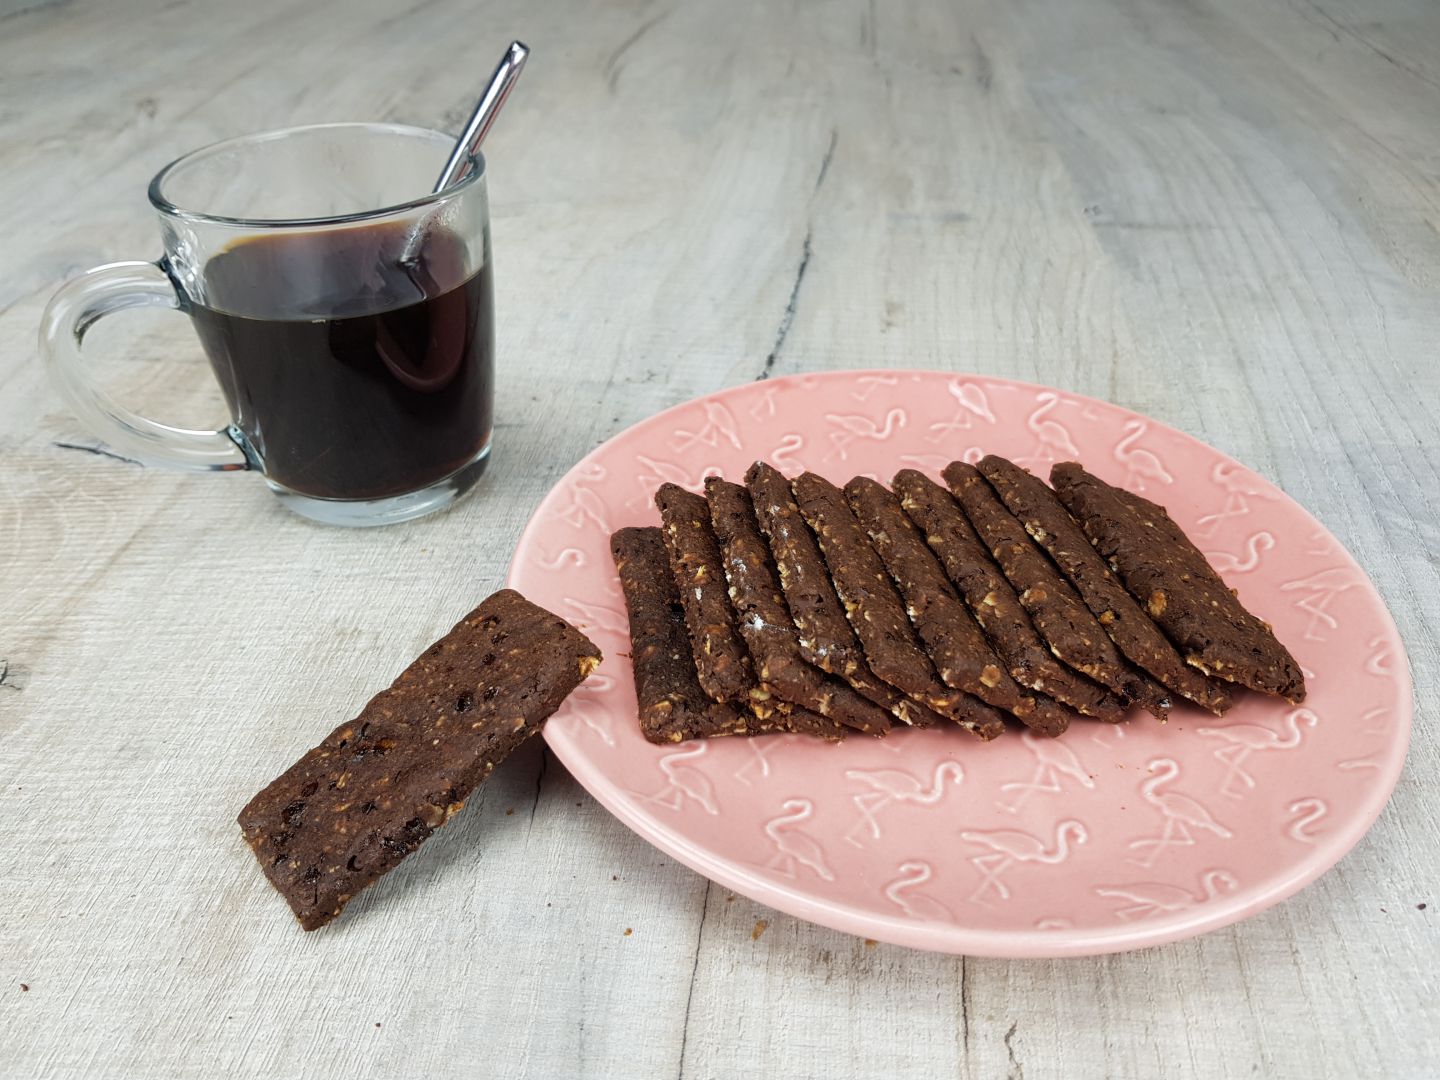 Recette Biscuit Petit Dejeuner Au Cafe Et Cacao Sur Quand Nadj Cuisine Blog De Cuisine De Nadj